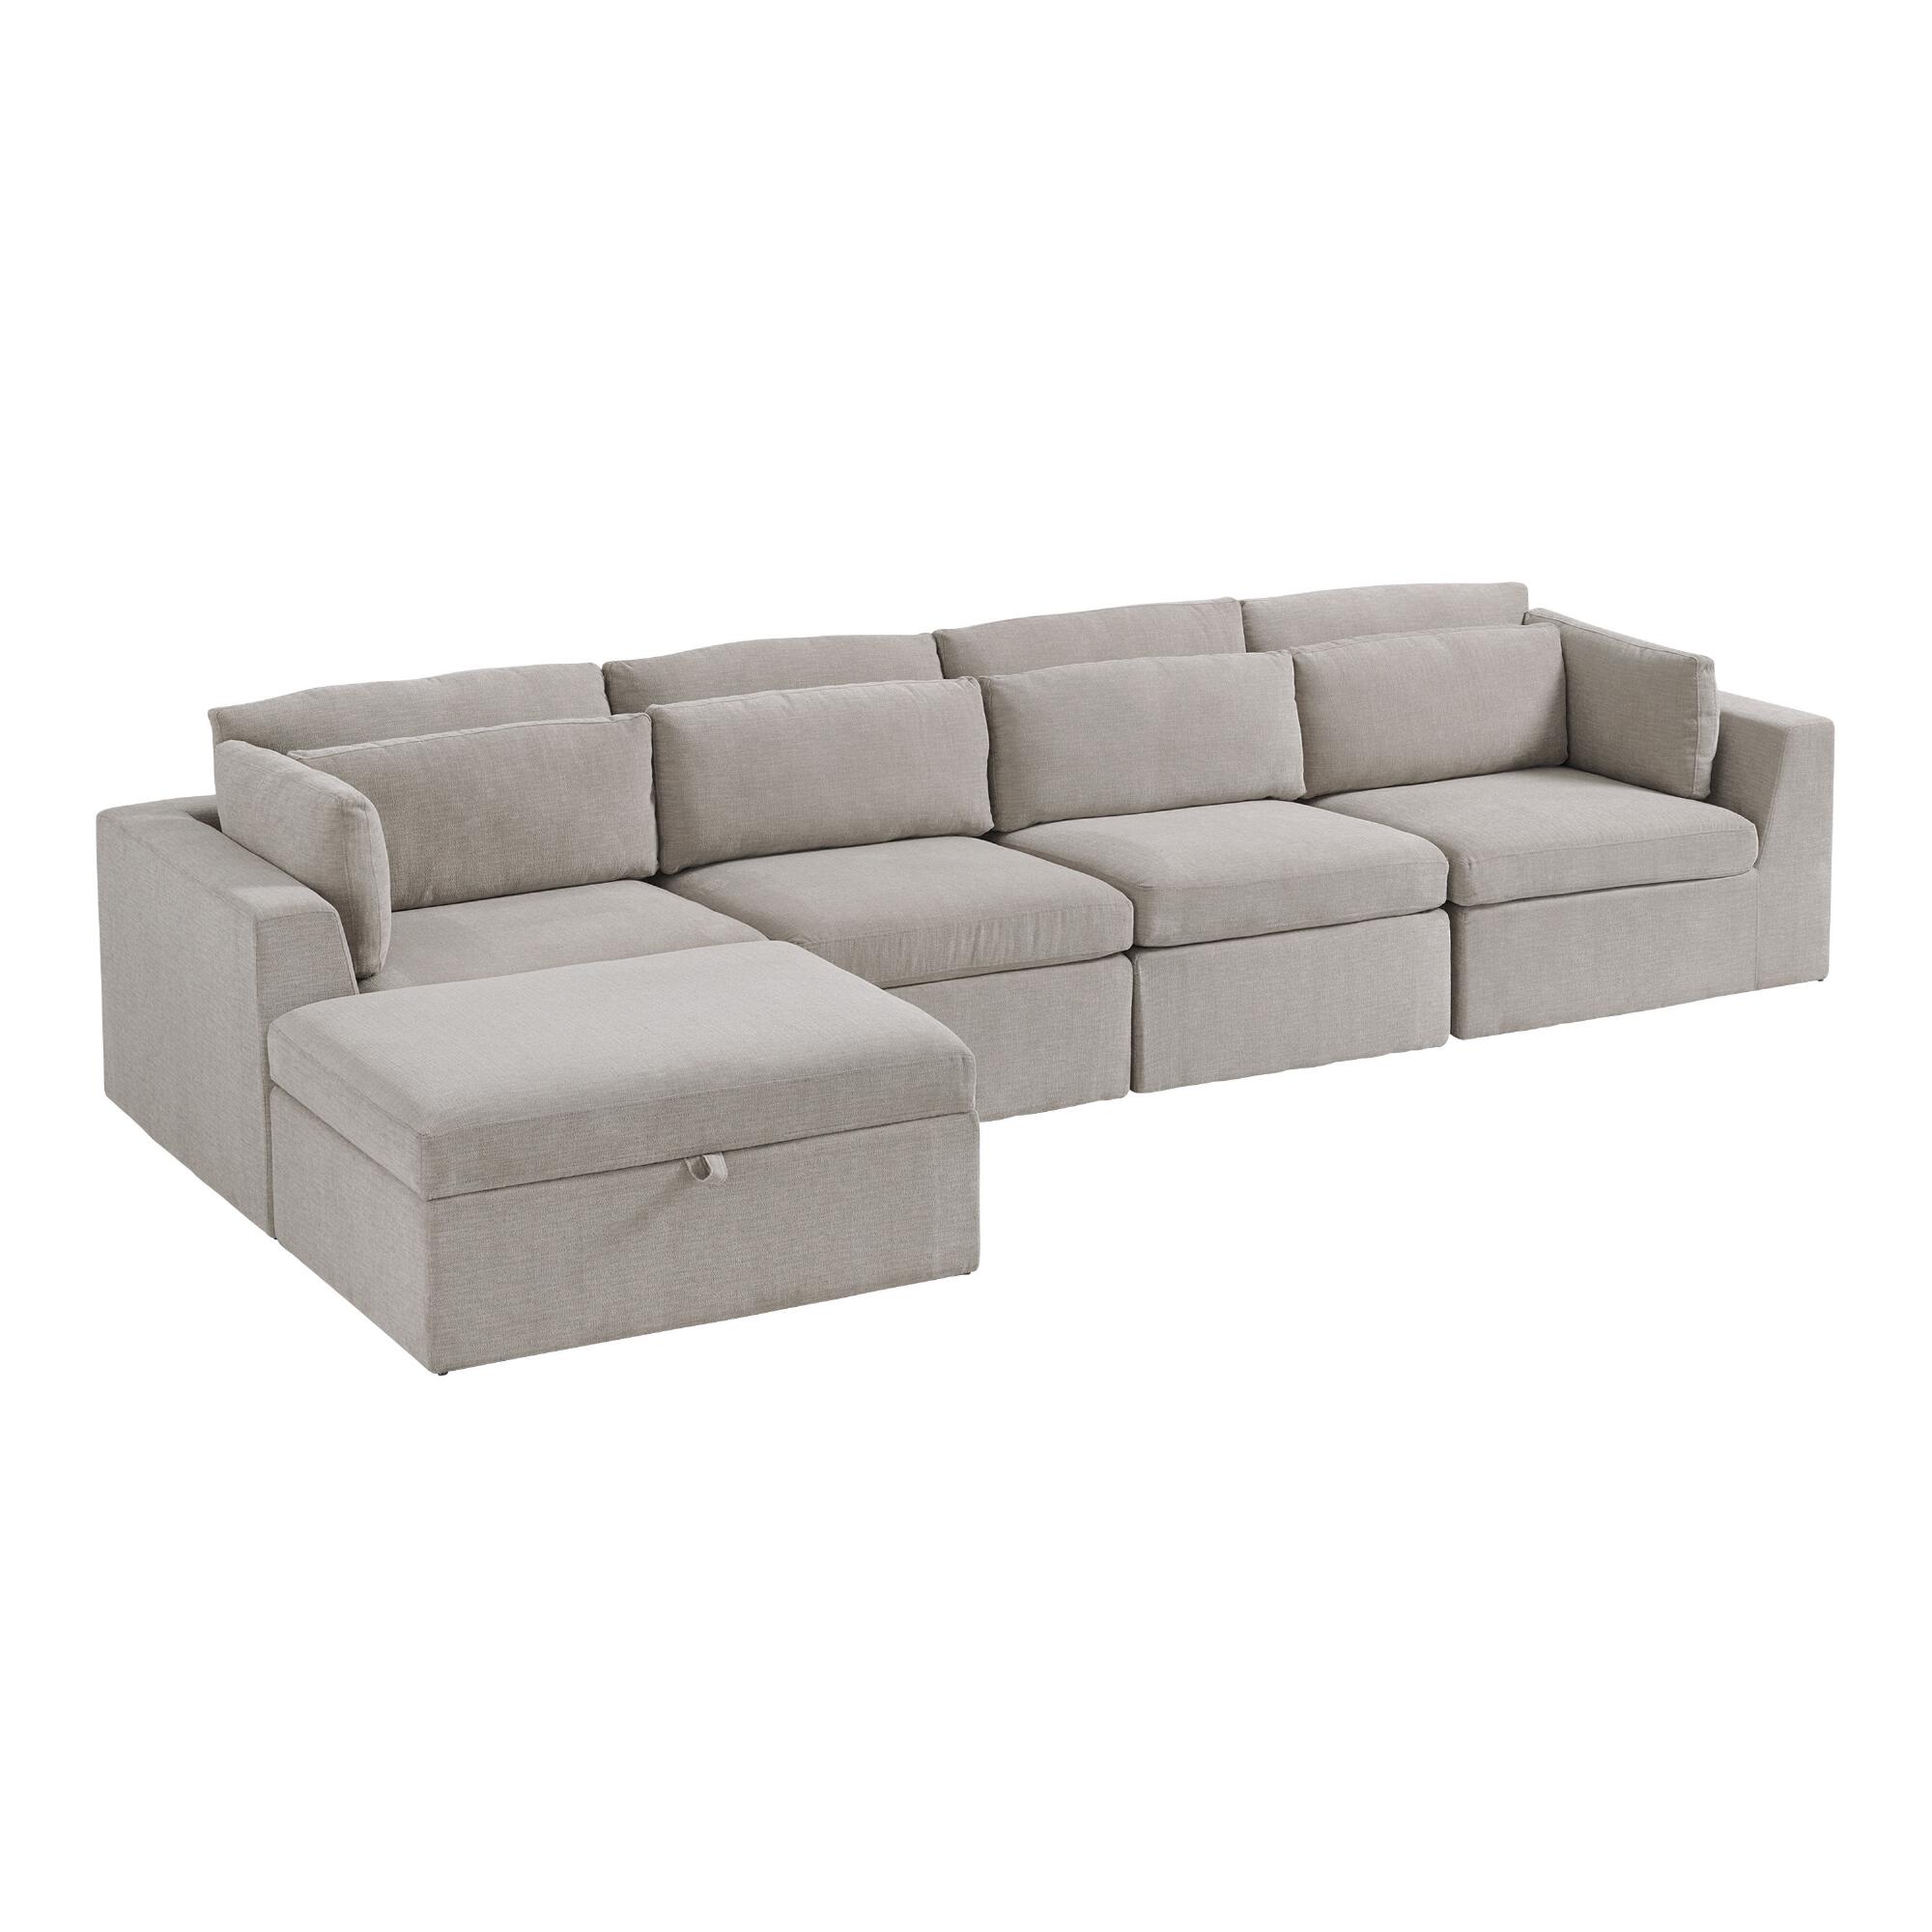 Gray Emmett 5 Piece Long Modular Sectional Sofa by World Market